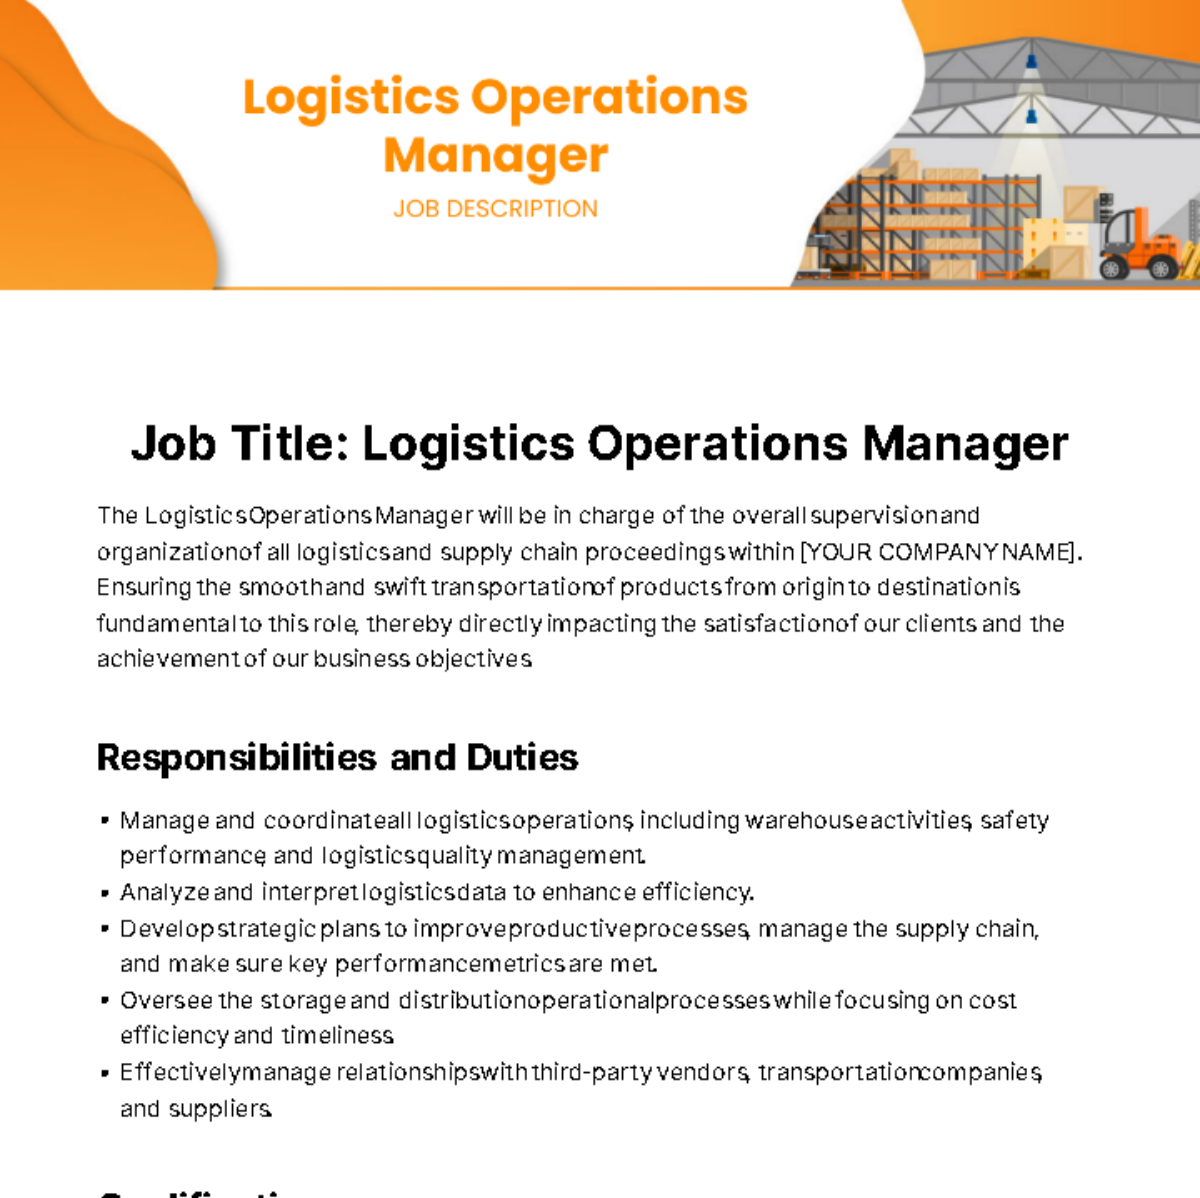 Logistics Operations Manager Job Description Template